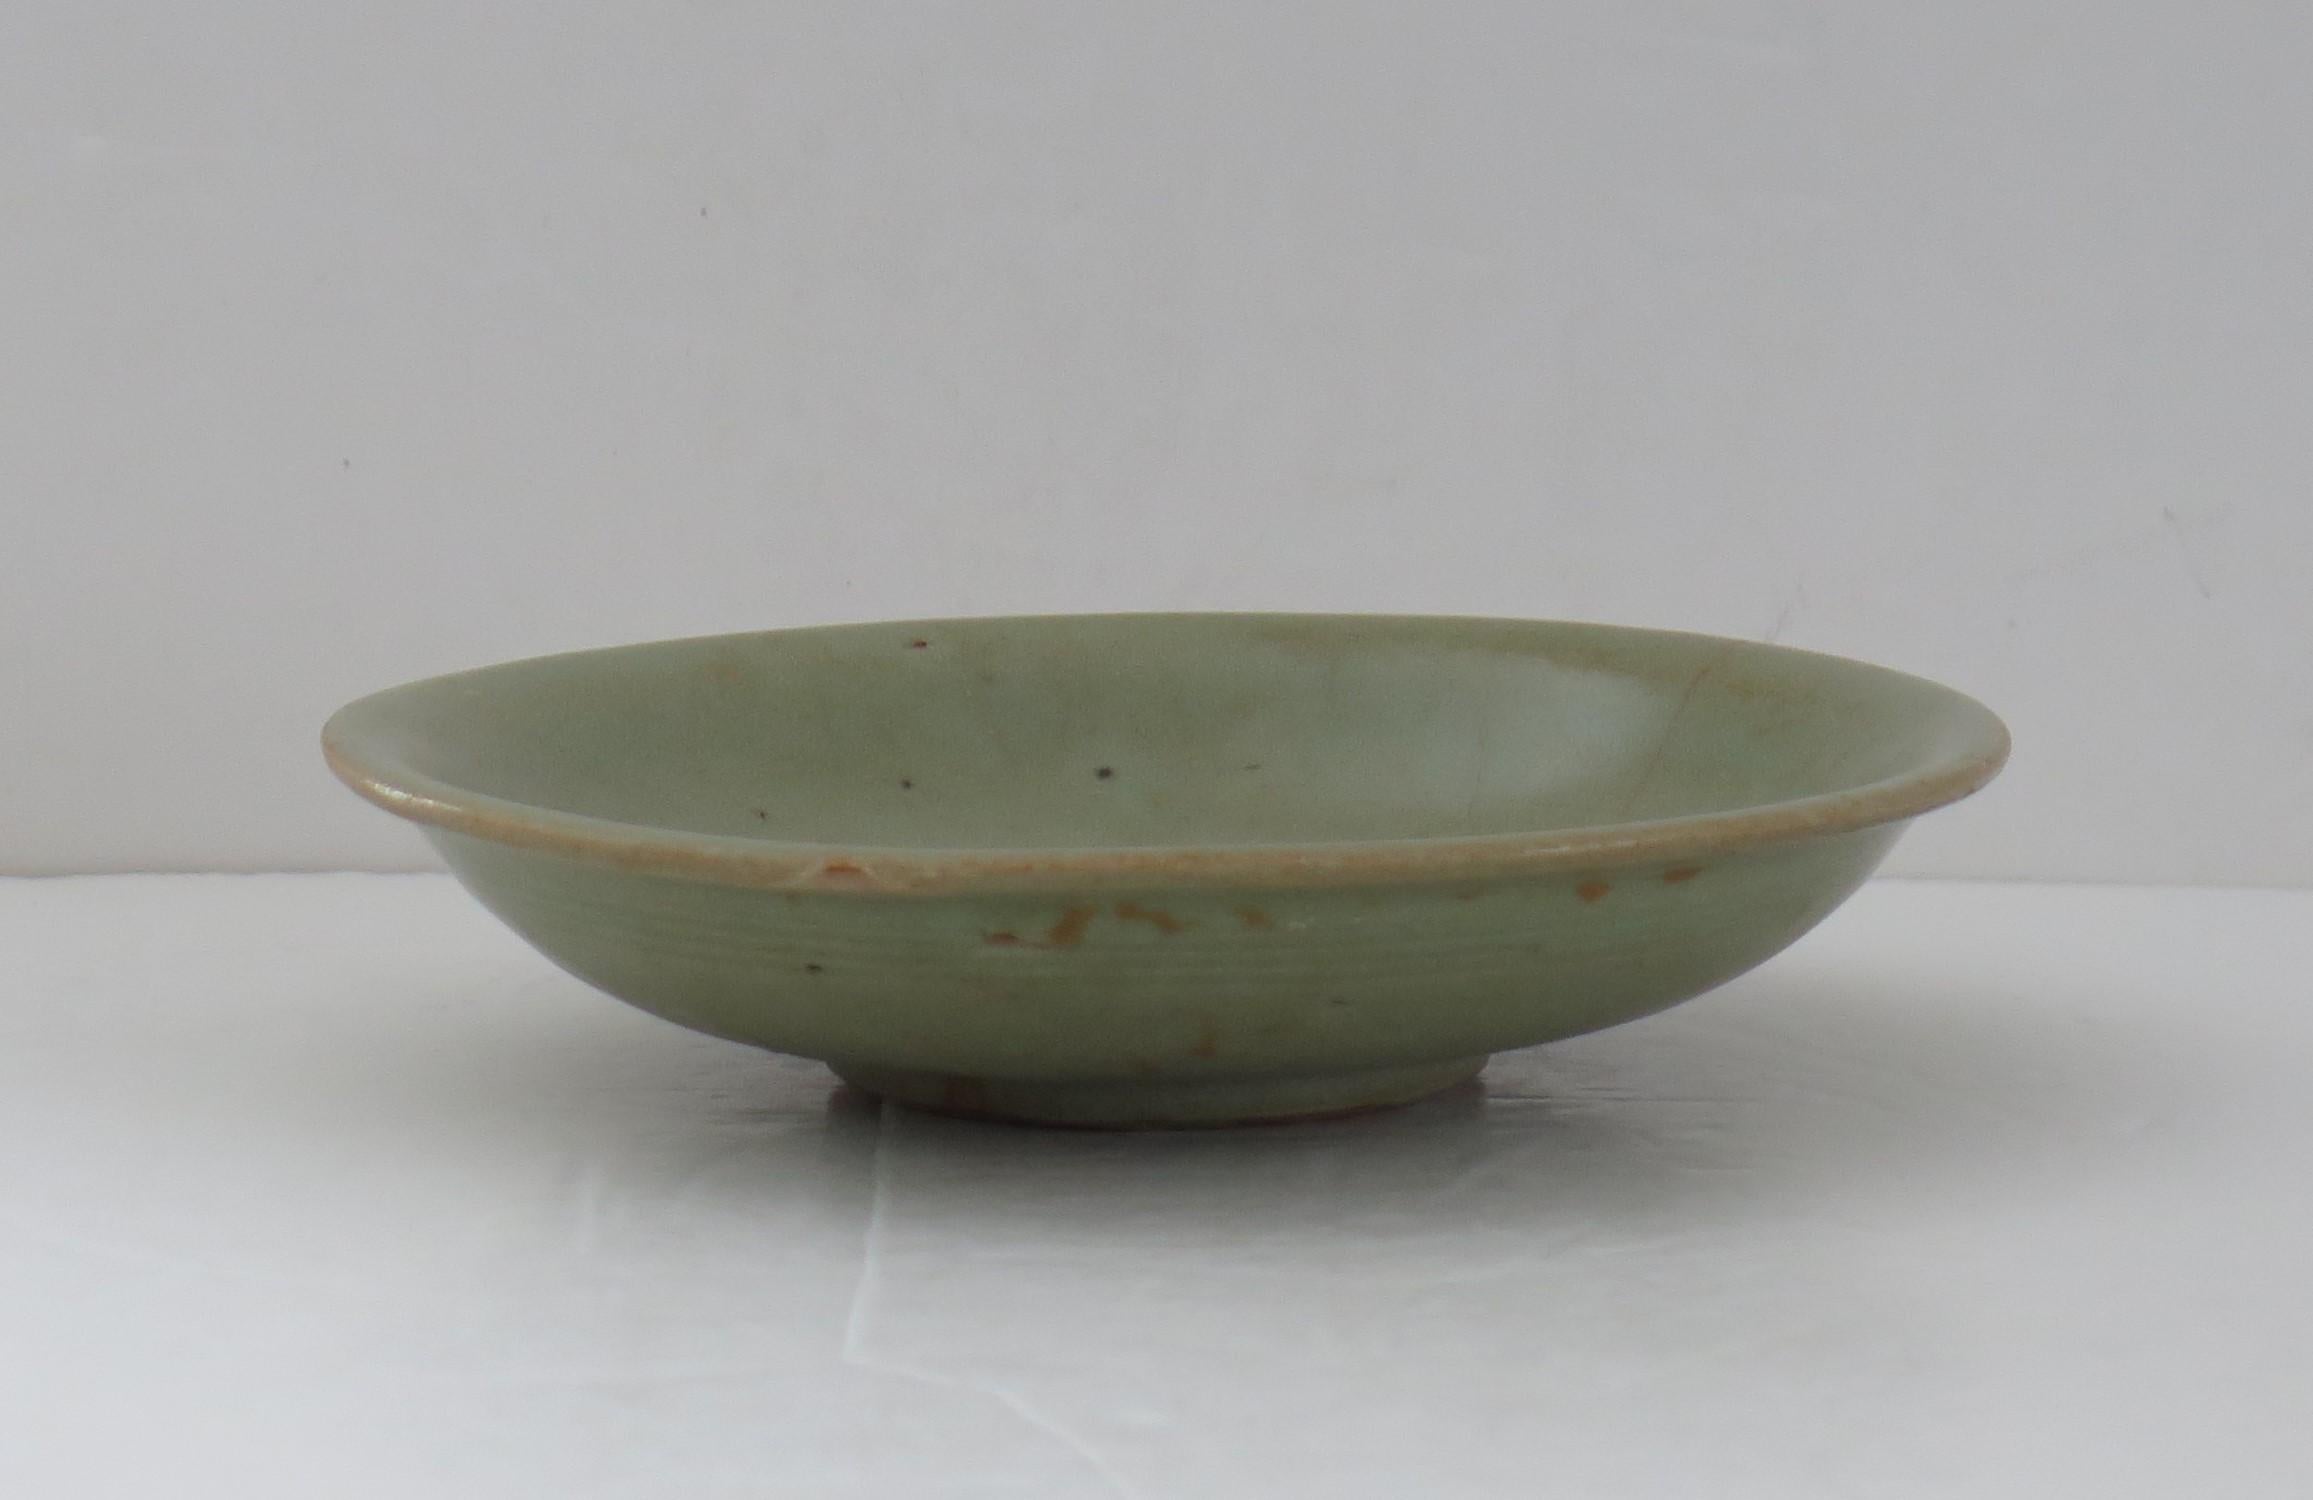 Il s'agit d'un très ancien bol ou d'une assiette en grès chinois Longquan Celadon à décor incisé, que nous datons de la dynastie Yuan, vers 1300.

Le bol est bien empoté et repose sur un pied bas. 

Le bol est de couleur vert olive, avec une